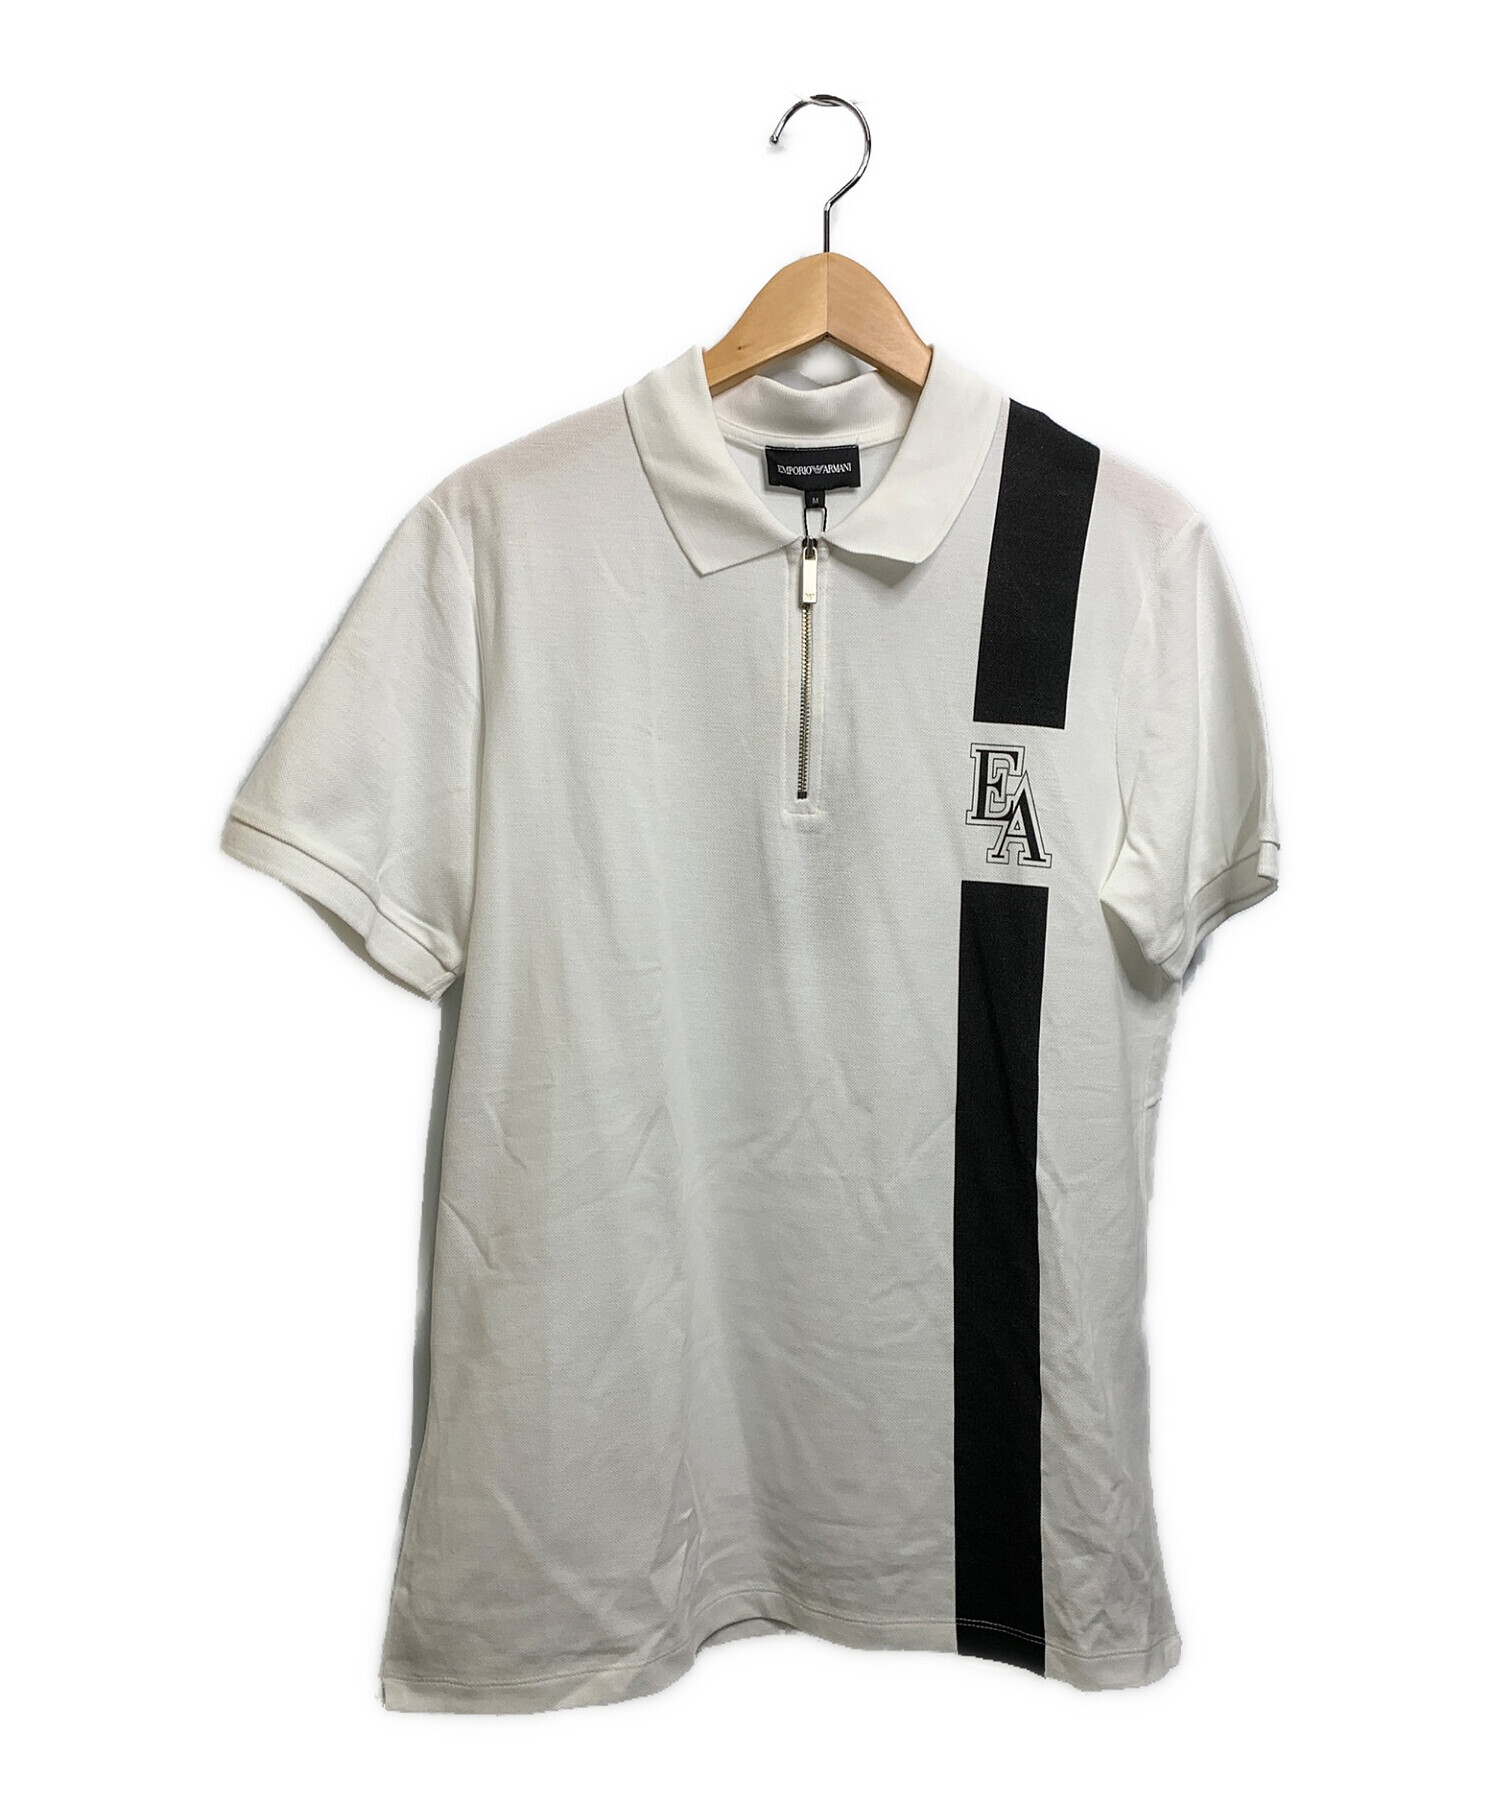 EMPORIO ARMANI (エンポリオアルマーニ) ポロシャツ ホワイト×ブラック サイズ:M